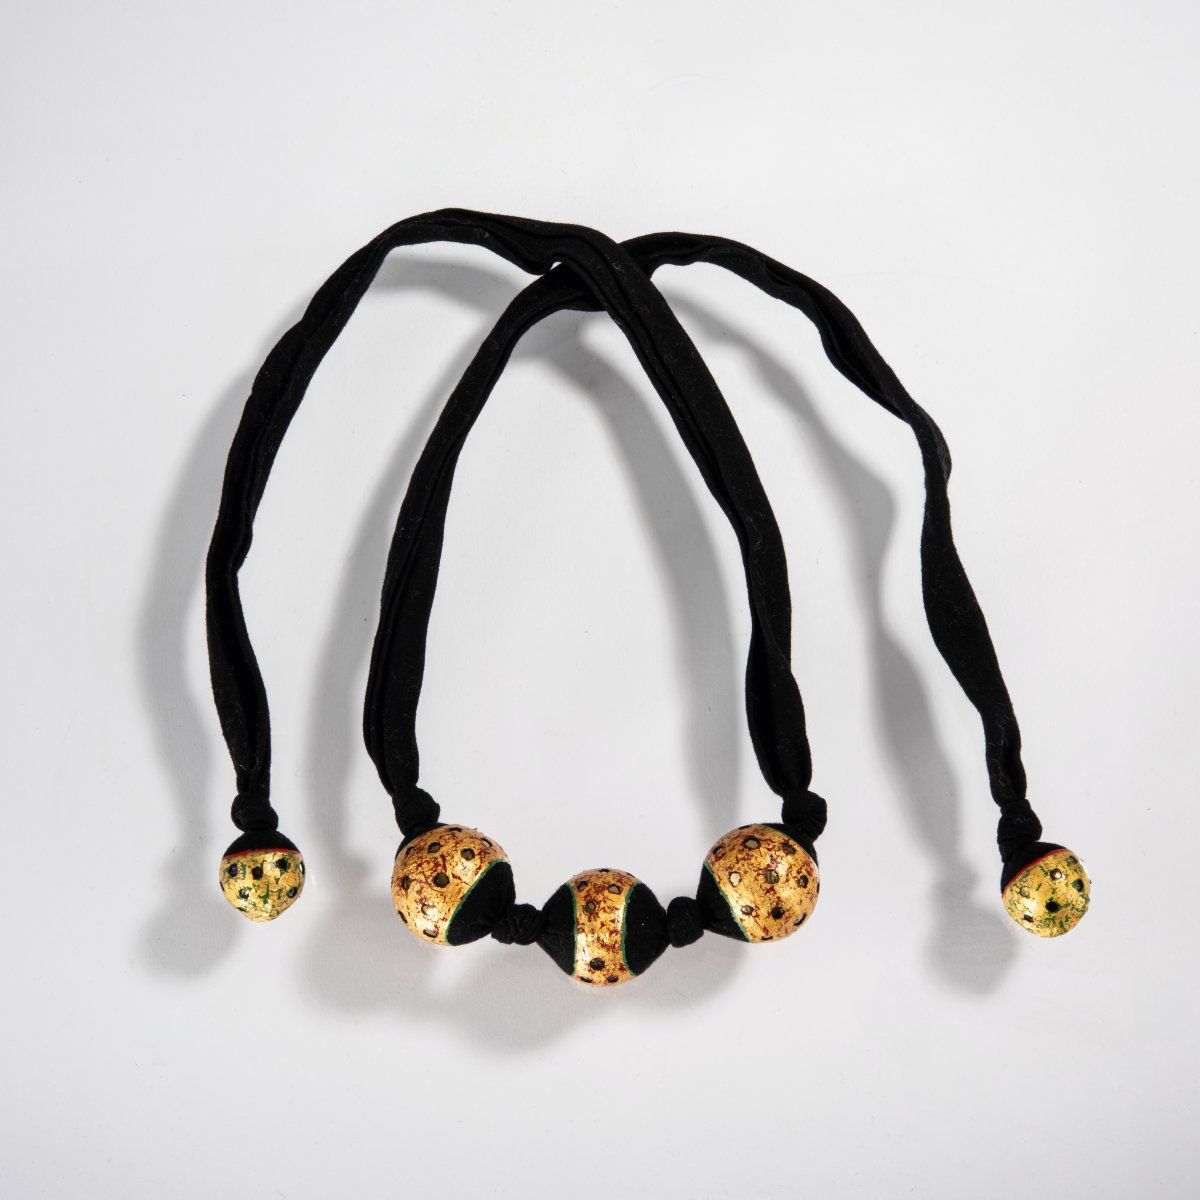 Null 贝佩-凯斯勒（1952年，阿姆斯特丹--现居同上），声音链，1996年，该链创造了由运动触发的柔和声音。

黑色织物，丙烯酸漆，金箔，带声音的弹珠。2&hellip;